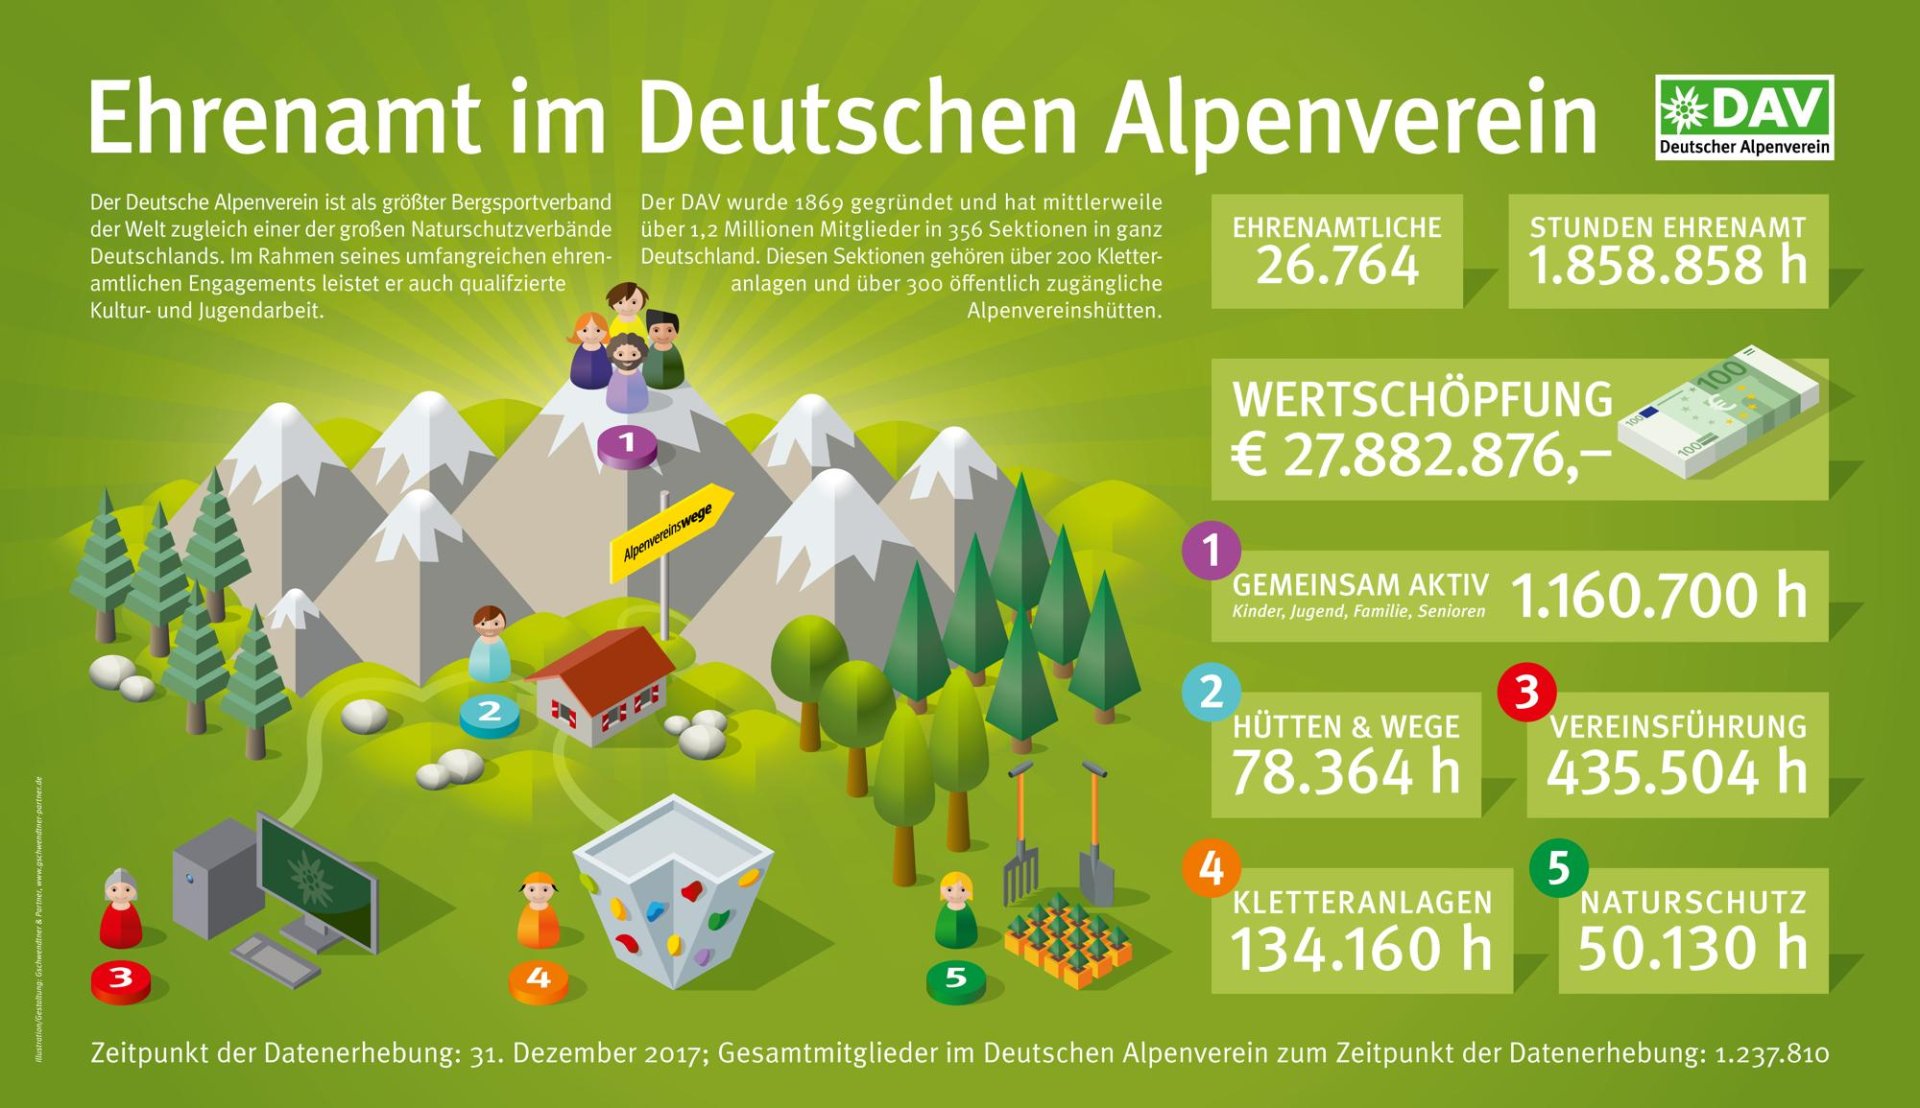 dav-ehrenamt | © Deutscher Alpenverein e.V.